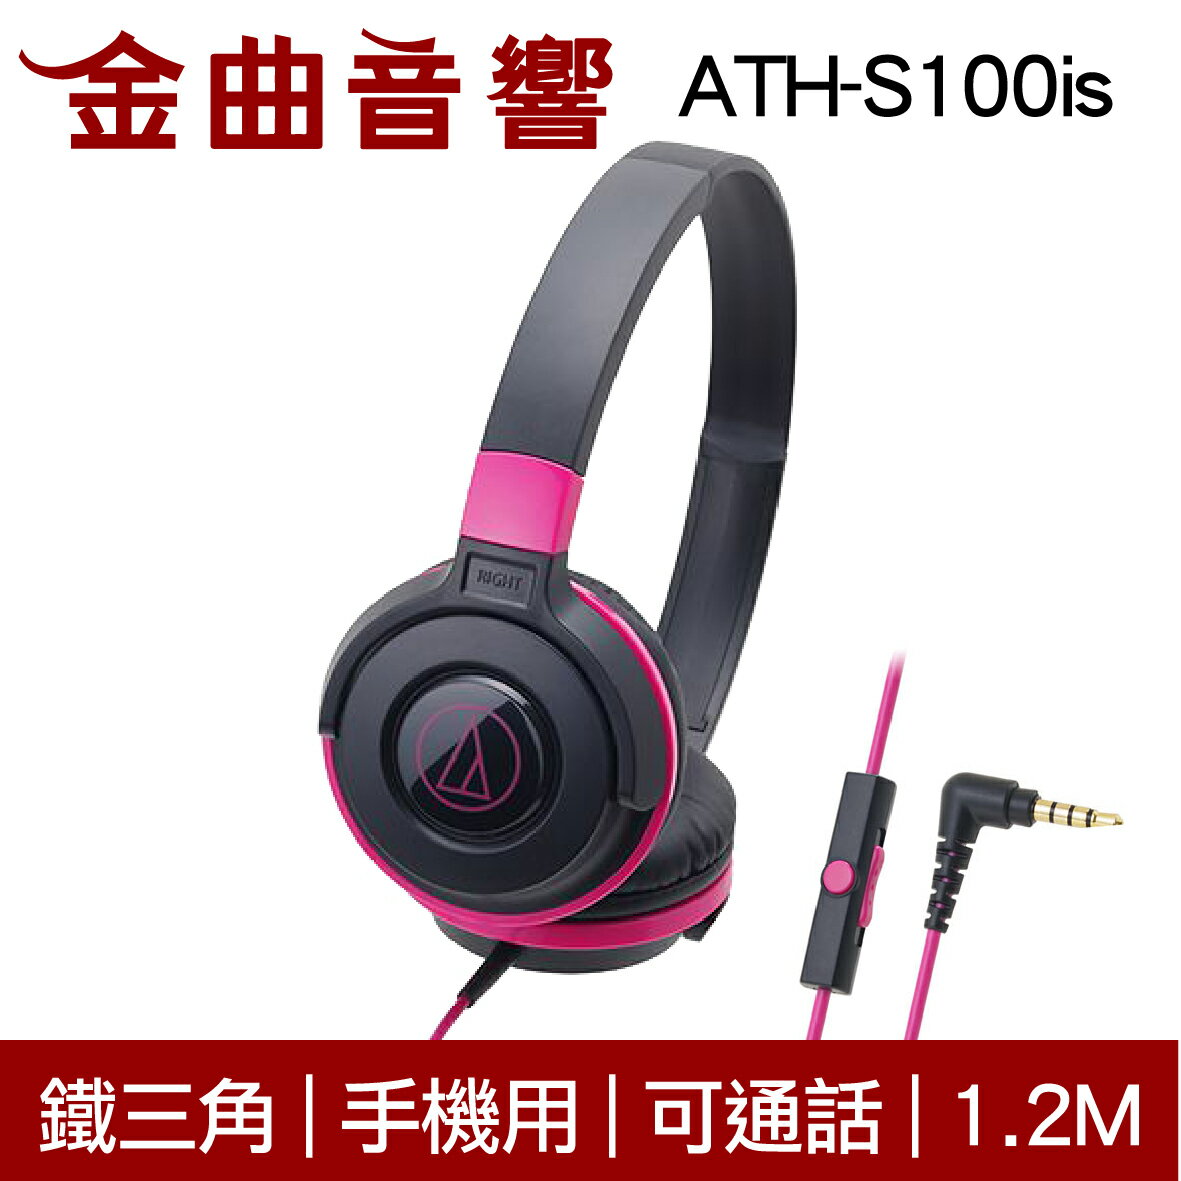 鐵三角 ATH-S100is 黑粉色 兒童耳機 大人 皆適用 耳罩式耳機 麥克風版 IOS/安卓適用 | 金曲音響